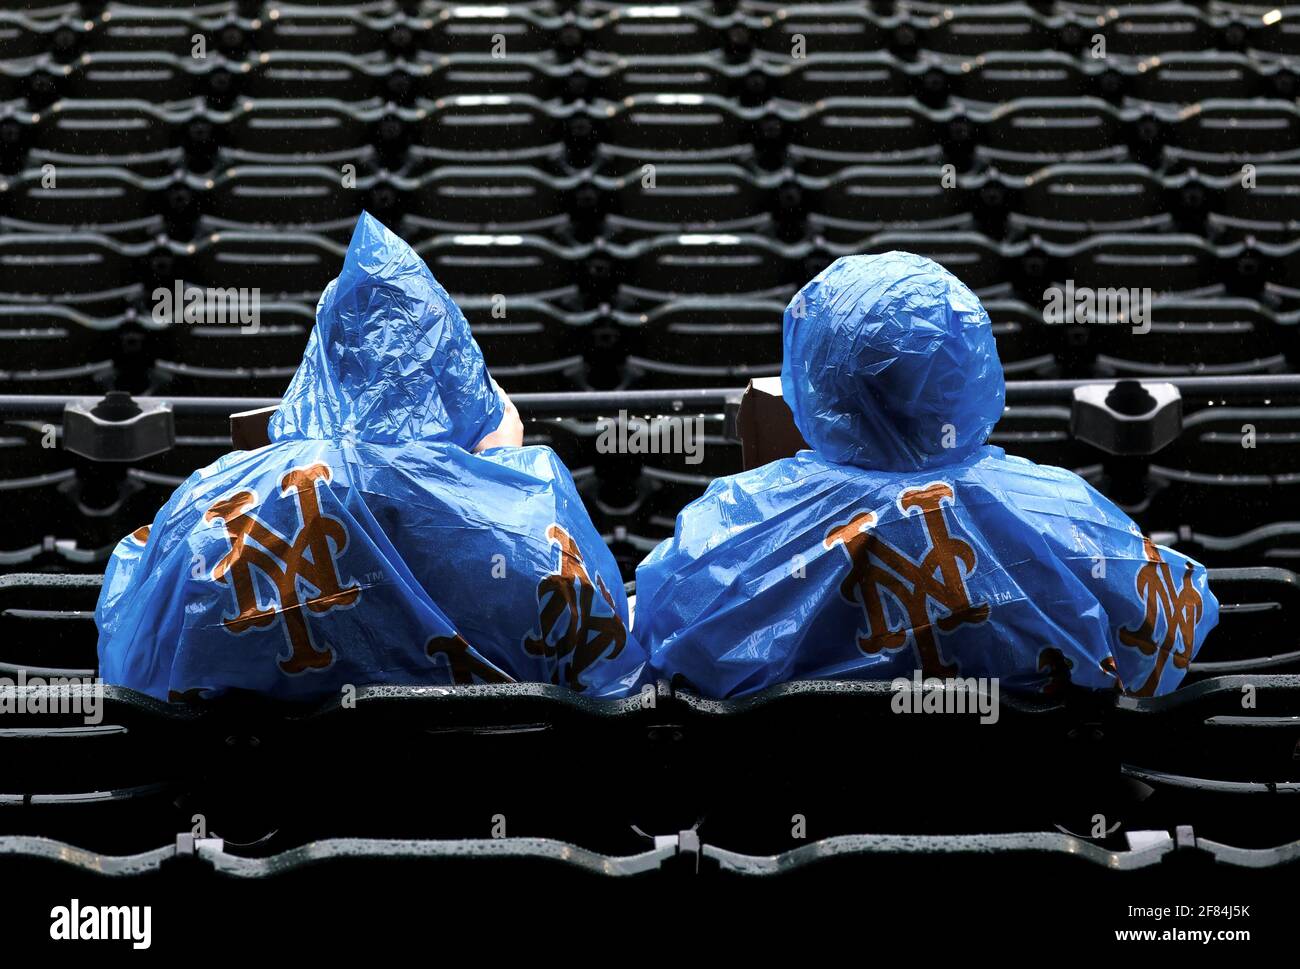 Queens, Estados Unidos. 11th de Abr de 2021. Los fans de los New York Mets se encubren en plástico cuando la lluvia cae en la primera entrada contra los Miami Marlins en Citi Field el domingo, 11 de abril de 2021 en la ciudad de Nueva York. Foto de Peter Foley/UPI Crédito: UPI/Alamy Live News Foto de stock